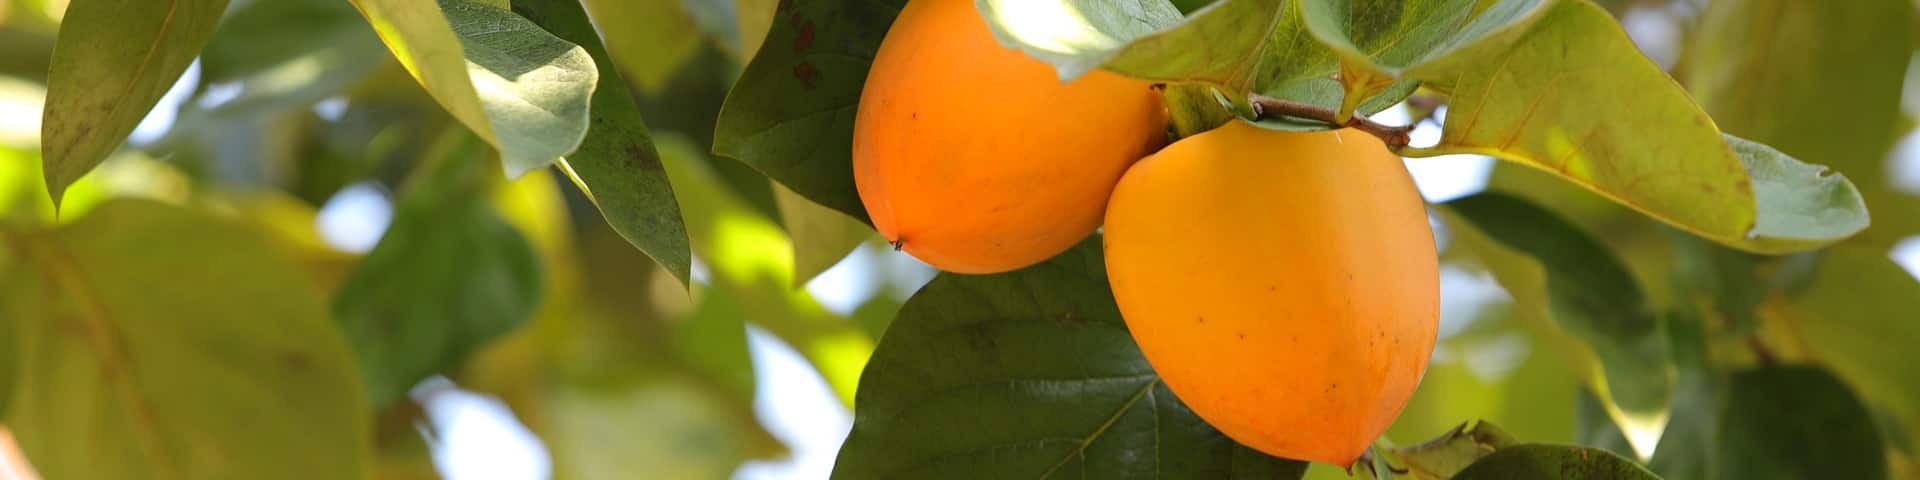 Zwei Kaki-Früchte am Baum von veredelten Kakibaum-Sorten